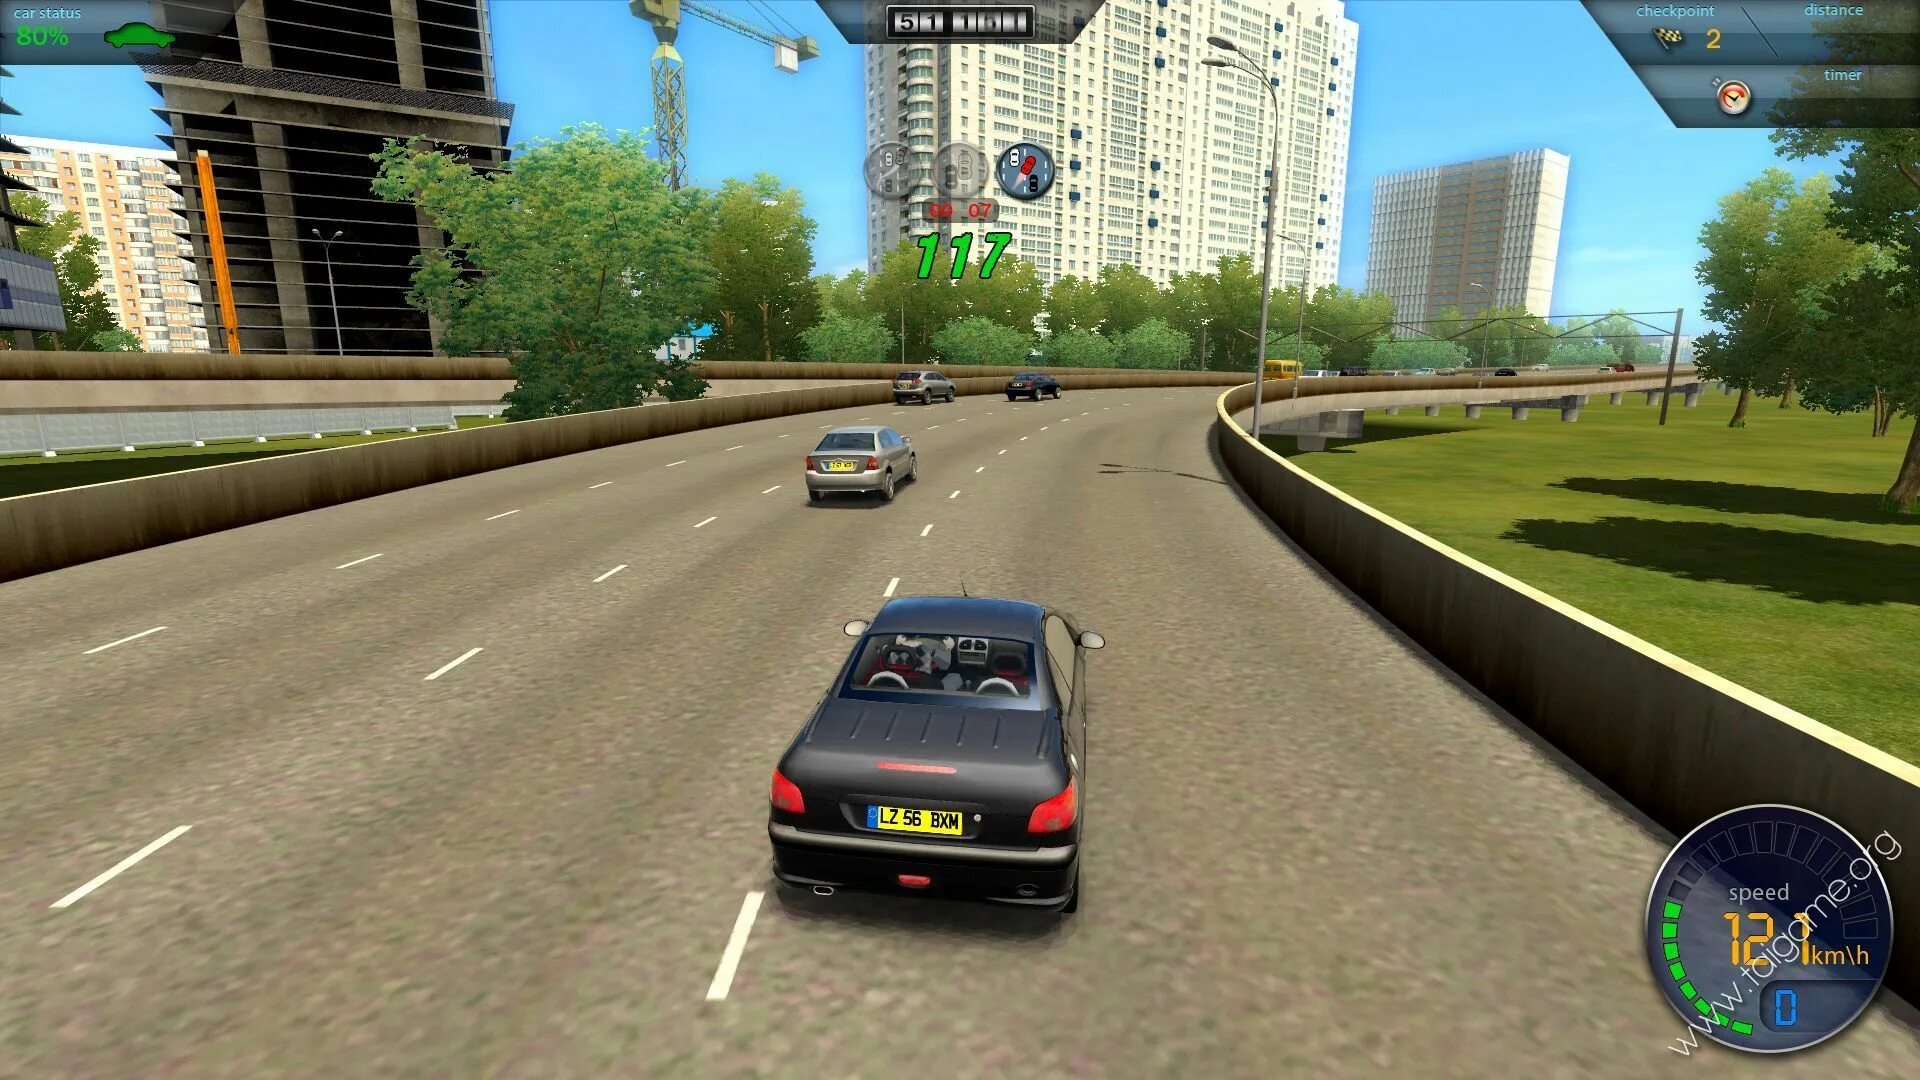 Сити кар драйвер. У320 City car Driving. City car Driving 2.0. Plaza-City.car.Driving. City car Driving Gameplay.